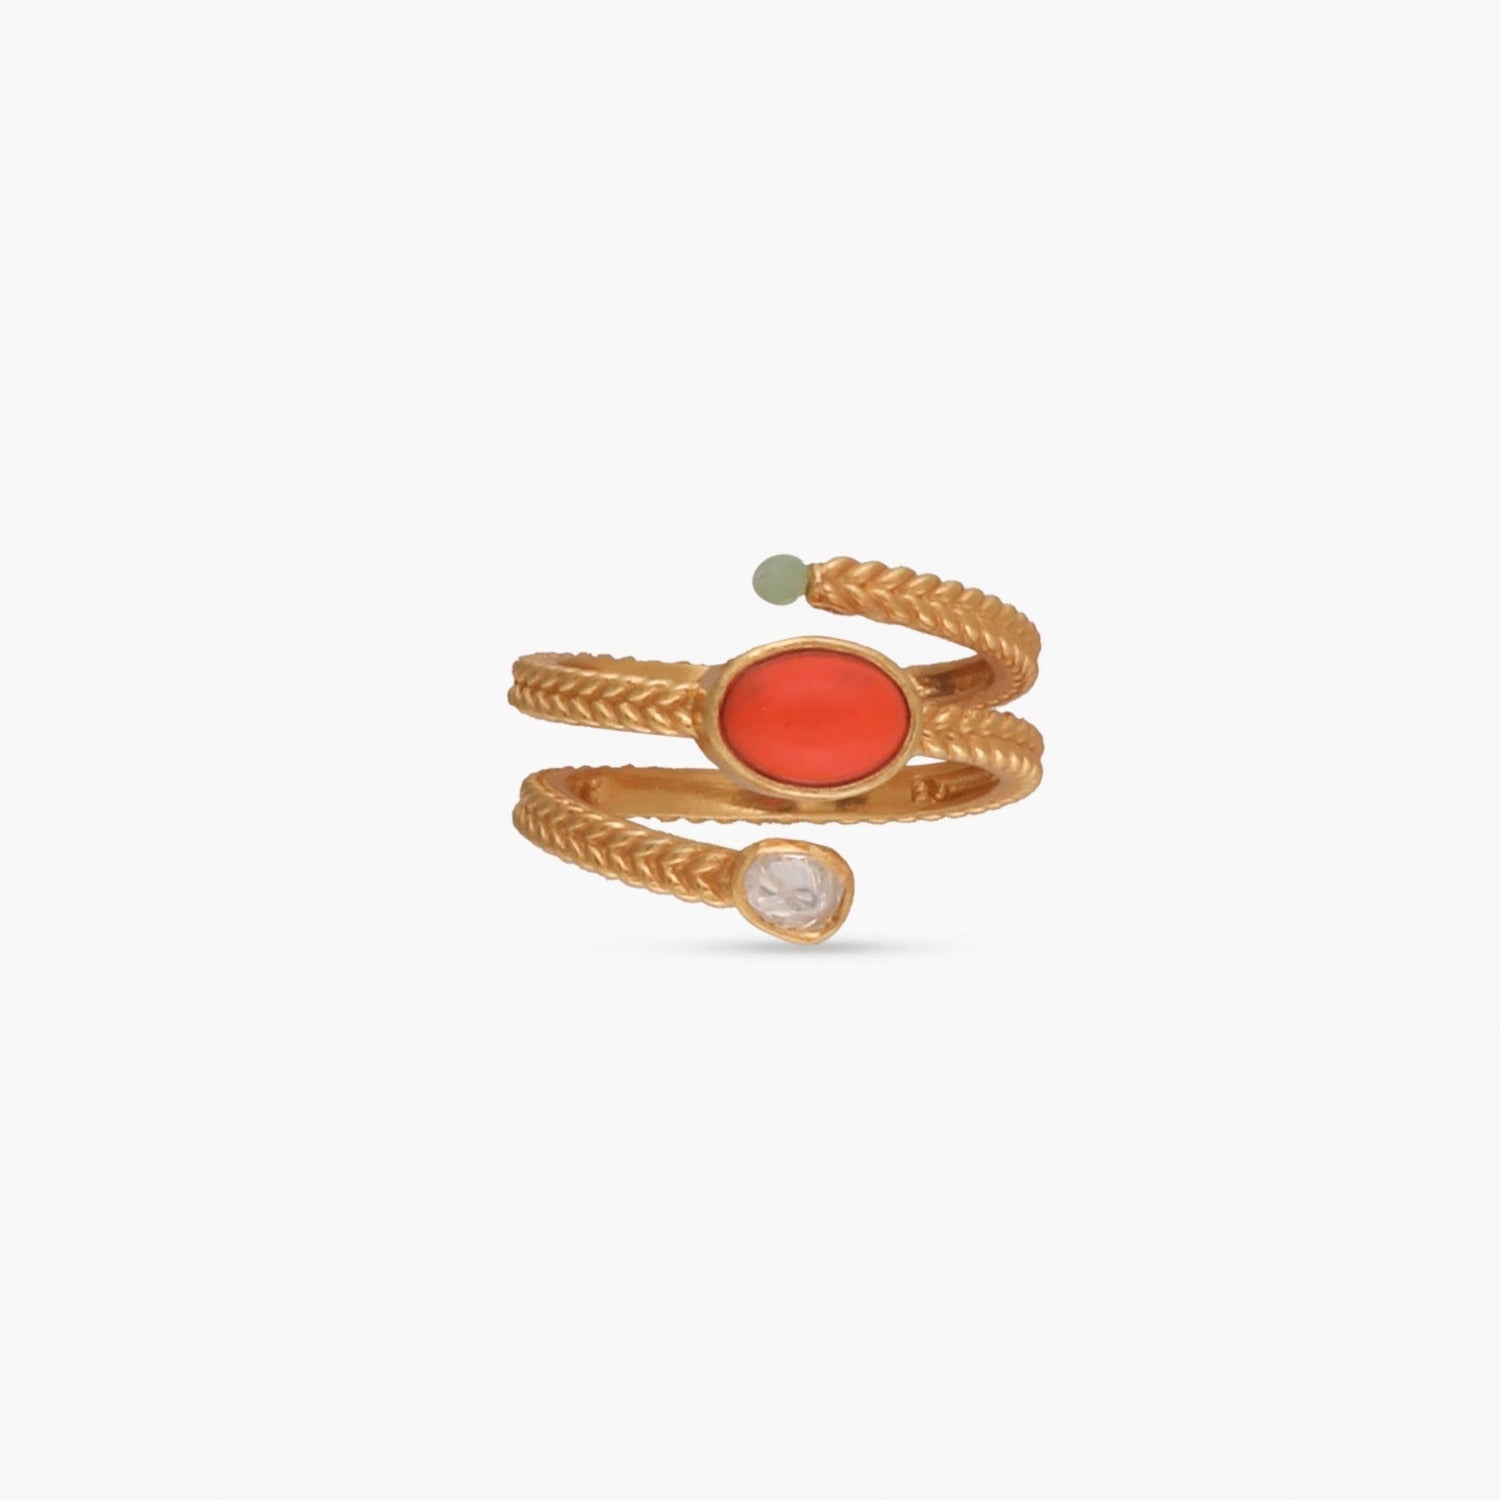 Spiral flower wooden block carved handmade adjustable size finger ring –  Handpicked